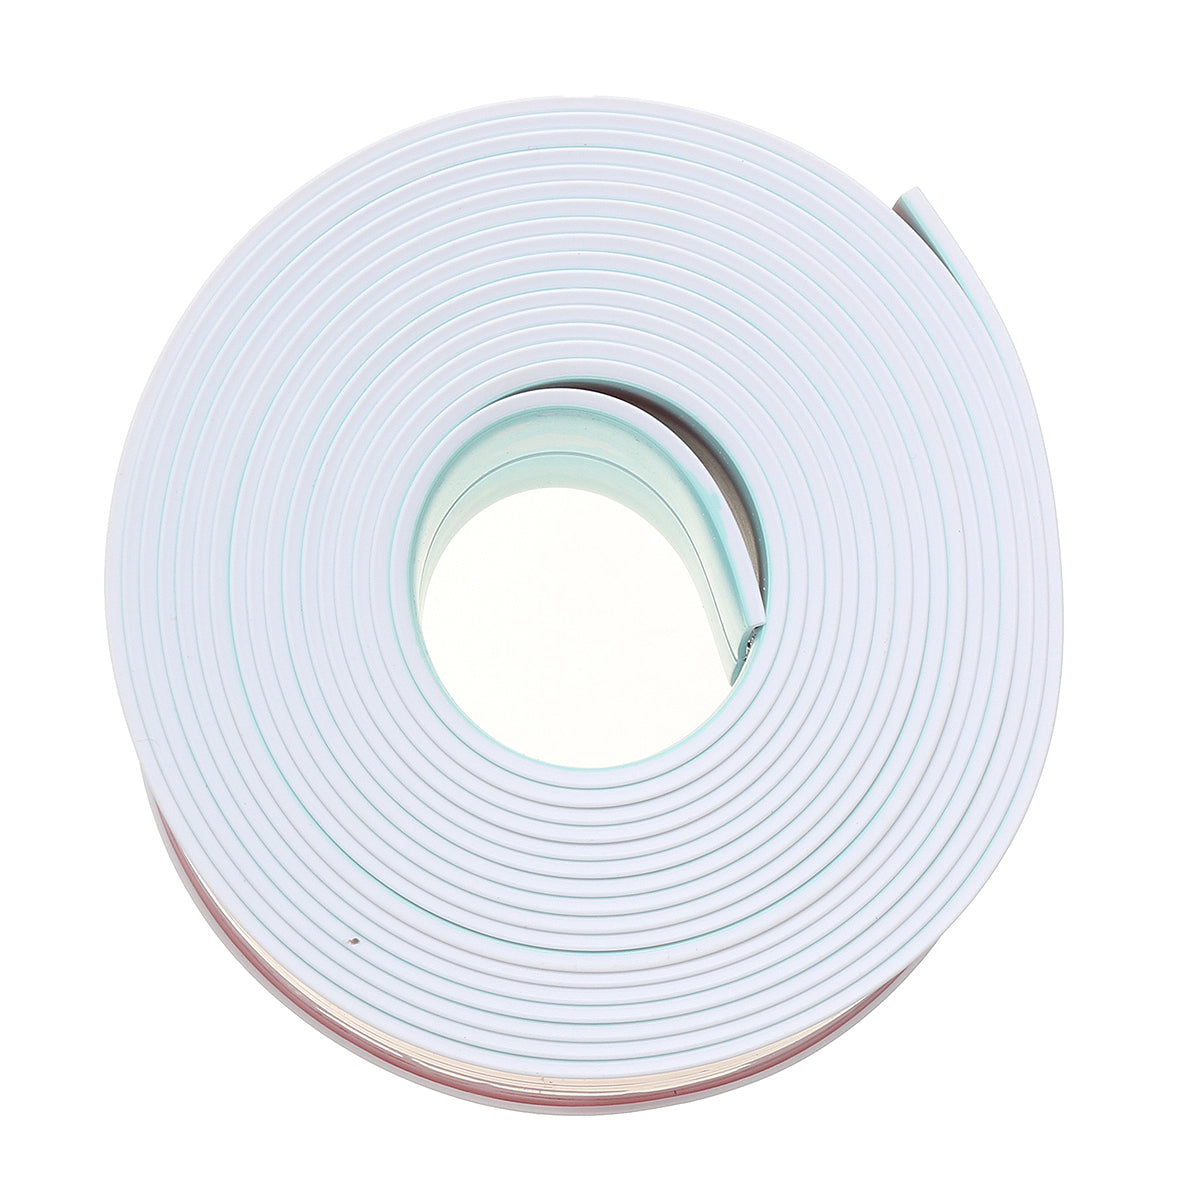 Self-adhesive Mildew Proof Adhesive Strip Waterproof Seam Strip Corner Glue Beauty Wall Stickers 